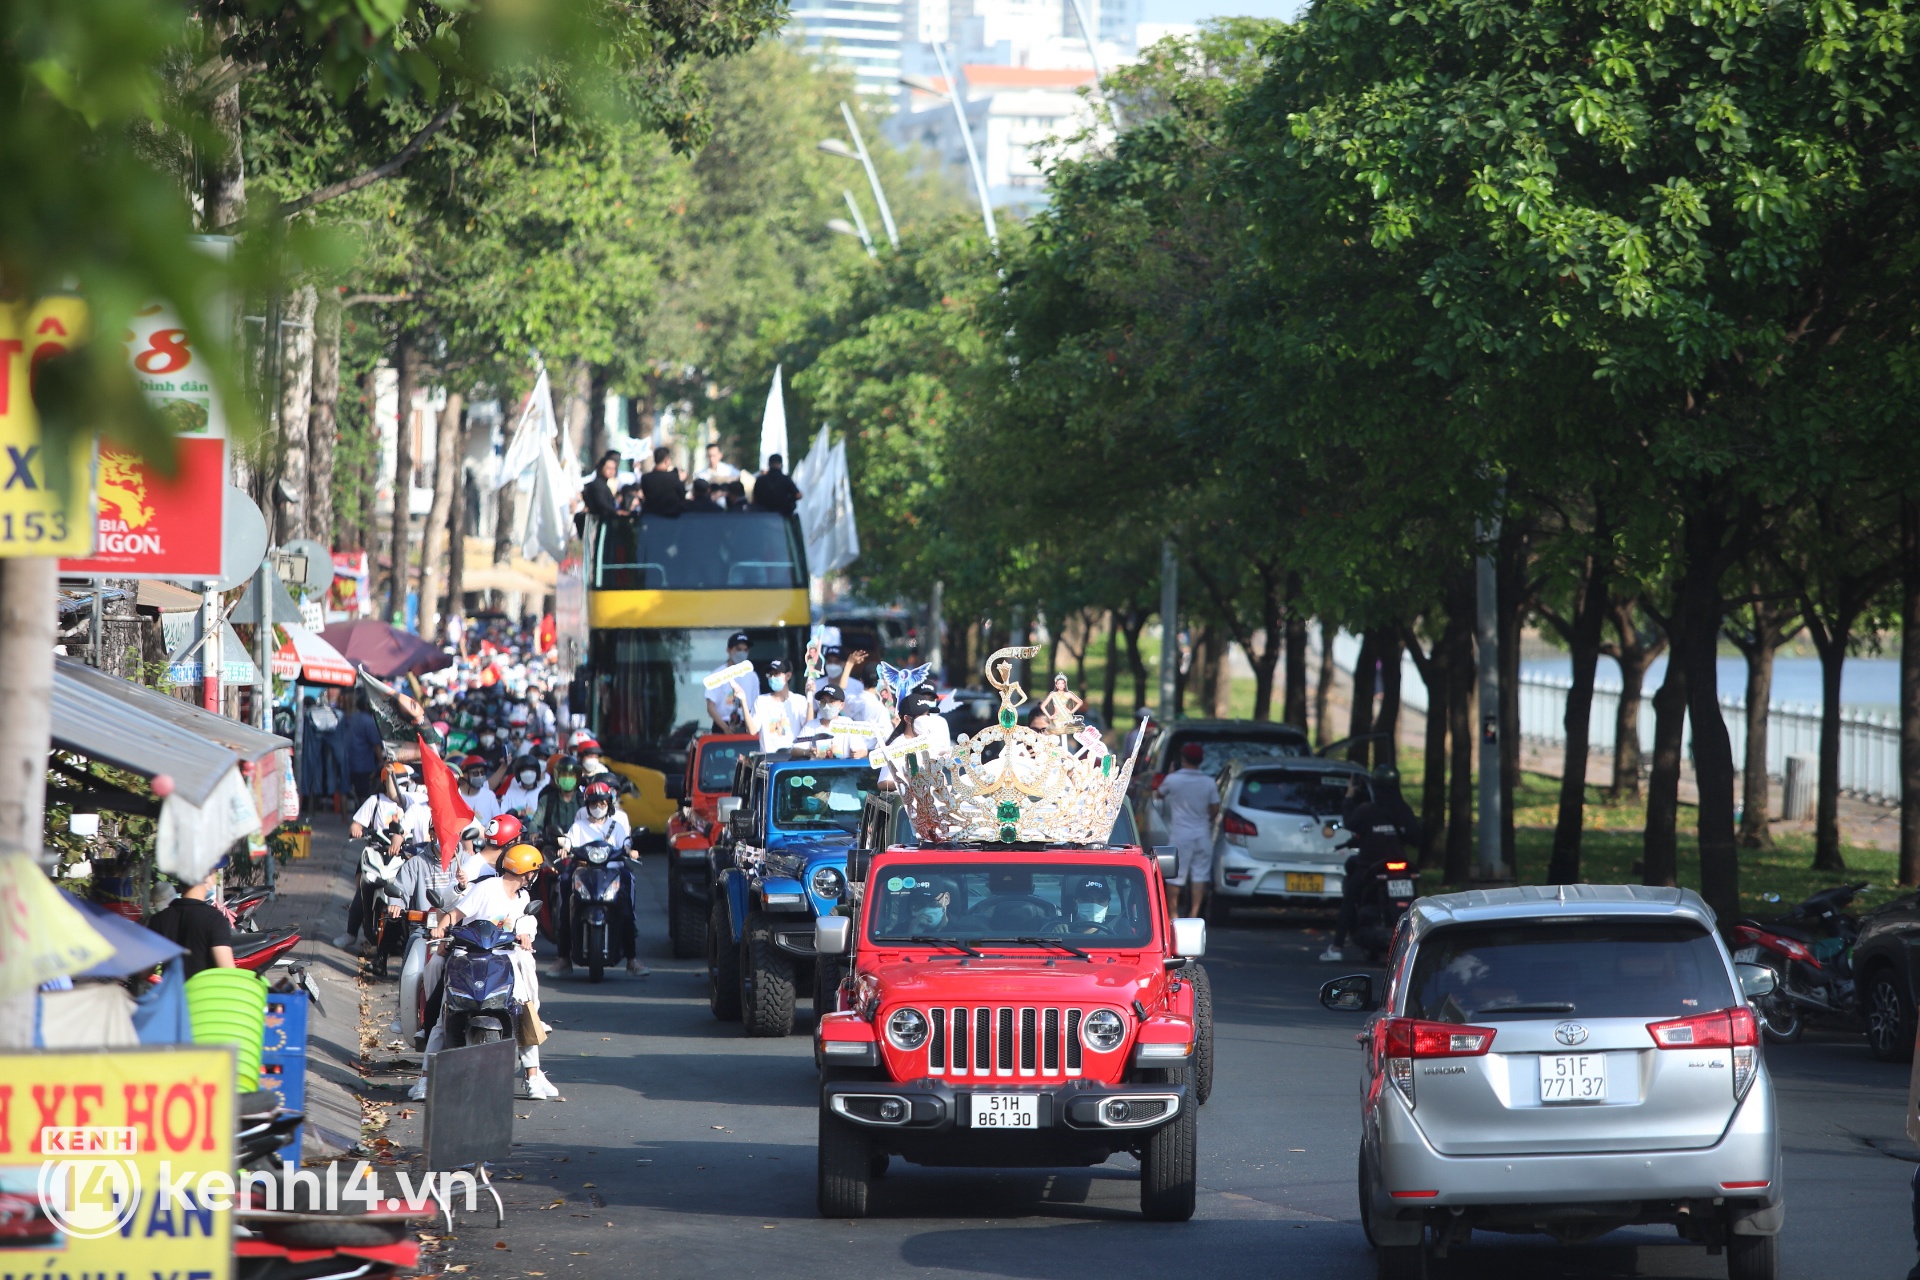 Trực tiếp buổi diễu hành đón Thuỳ Tiên tại TP.HCM: Fan chạy theo kín cả đường phố, Tân Miss Grand lộ diện cực xinh! - Ảnh 14.